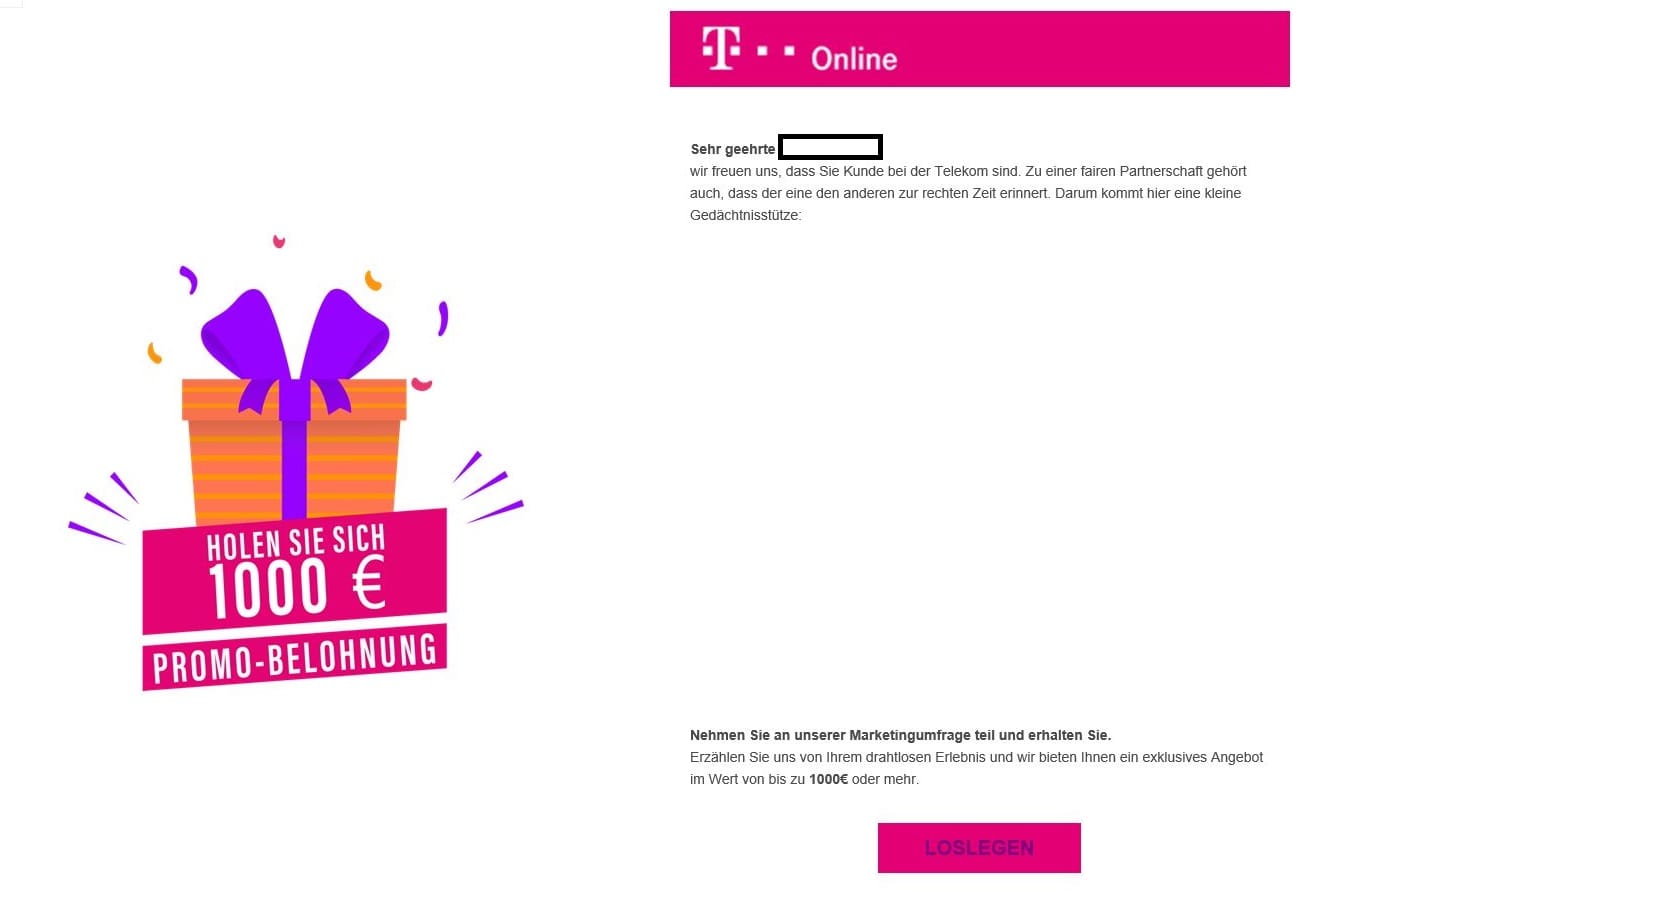 Aktuell erhalten Nutzer eine Mail in Namen der Telekom. Ihnen wird eine "Promo-Belohnung" im Wert von 1.000 Euro versprochen.